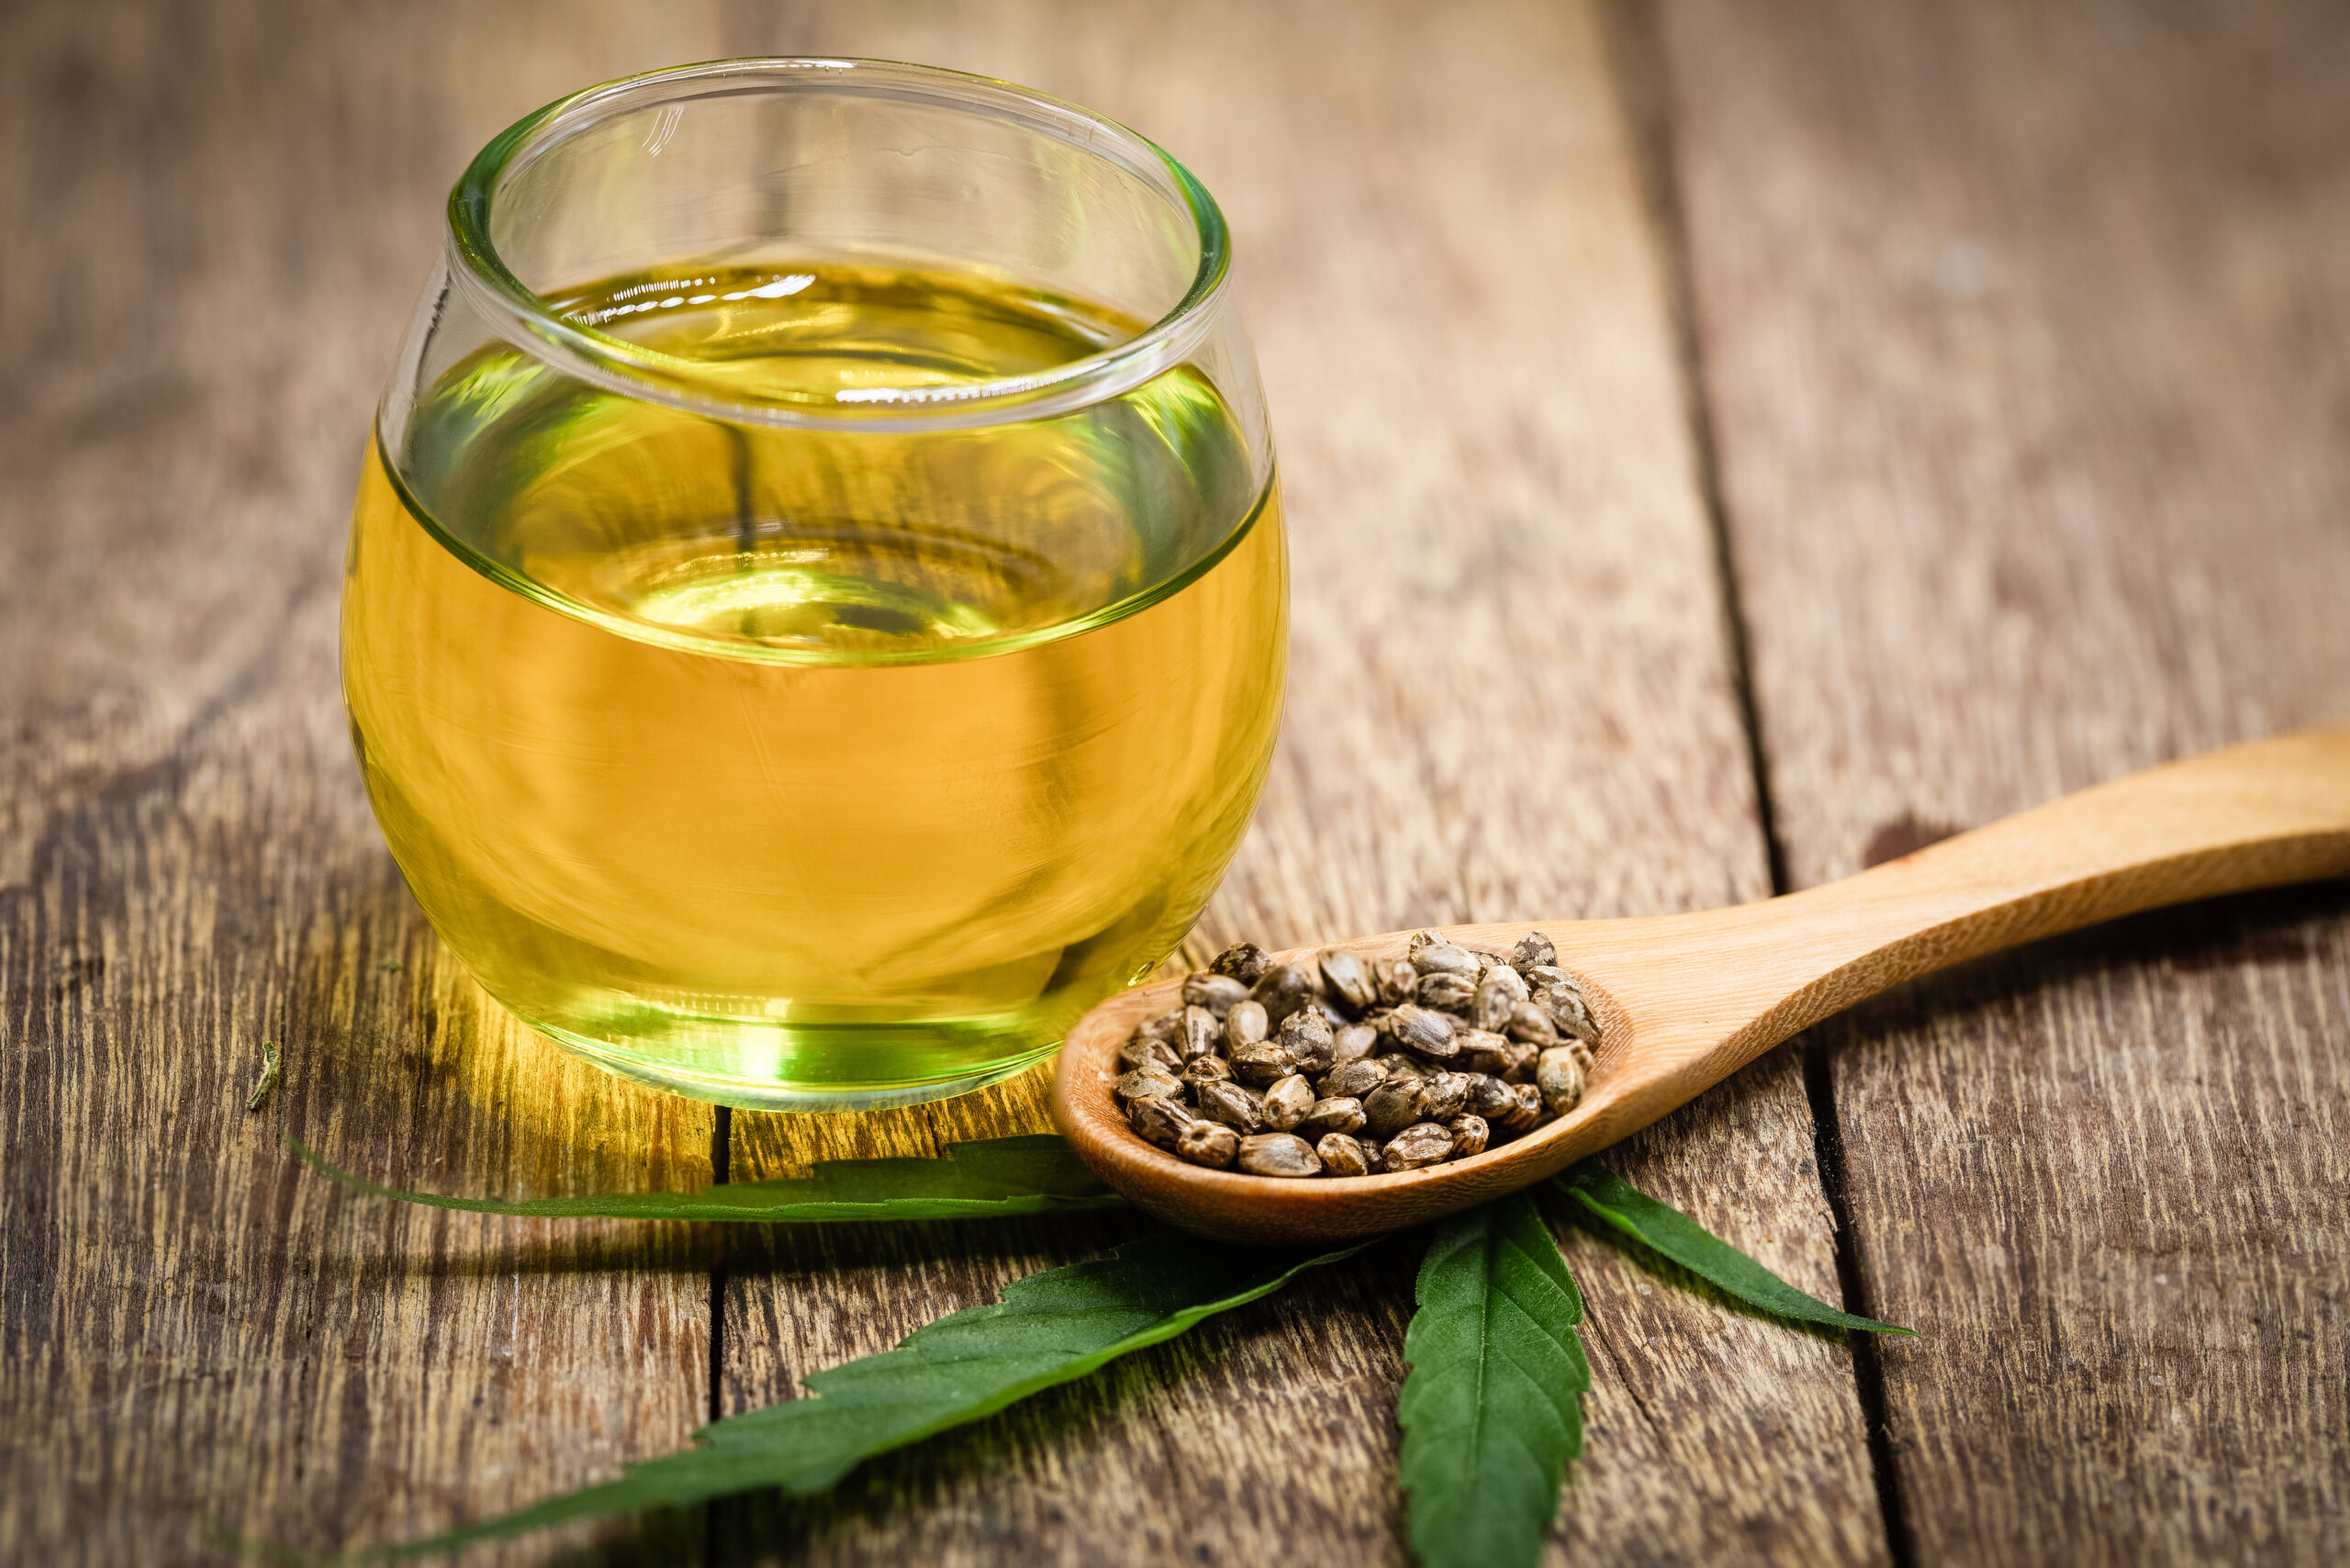 How to make hemp oil taste better